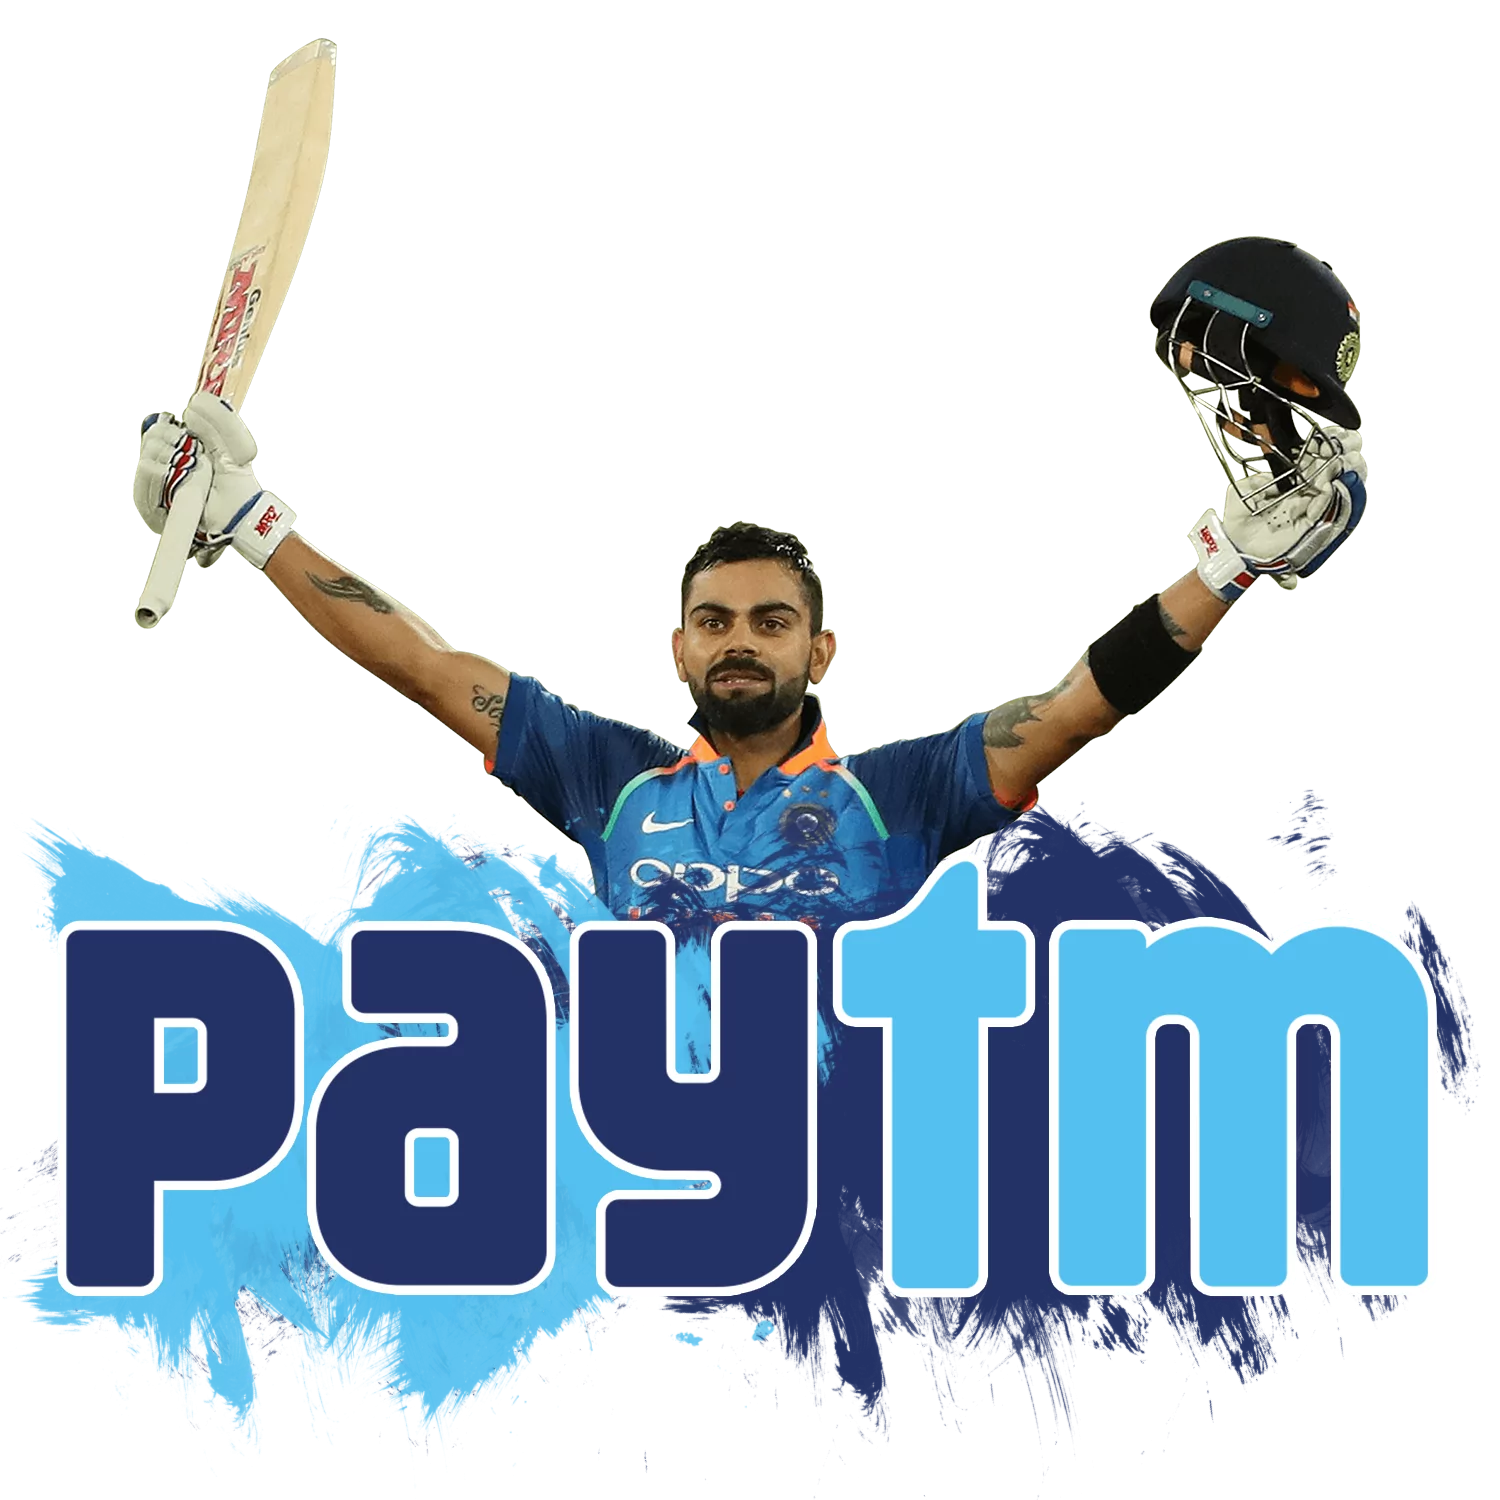 PayTM ऐप डाउनलोड करें और क्रिकेट सट्टेबाजी साइटों पर तत्काल जमा करें।